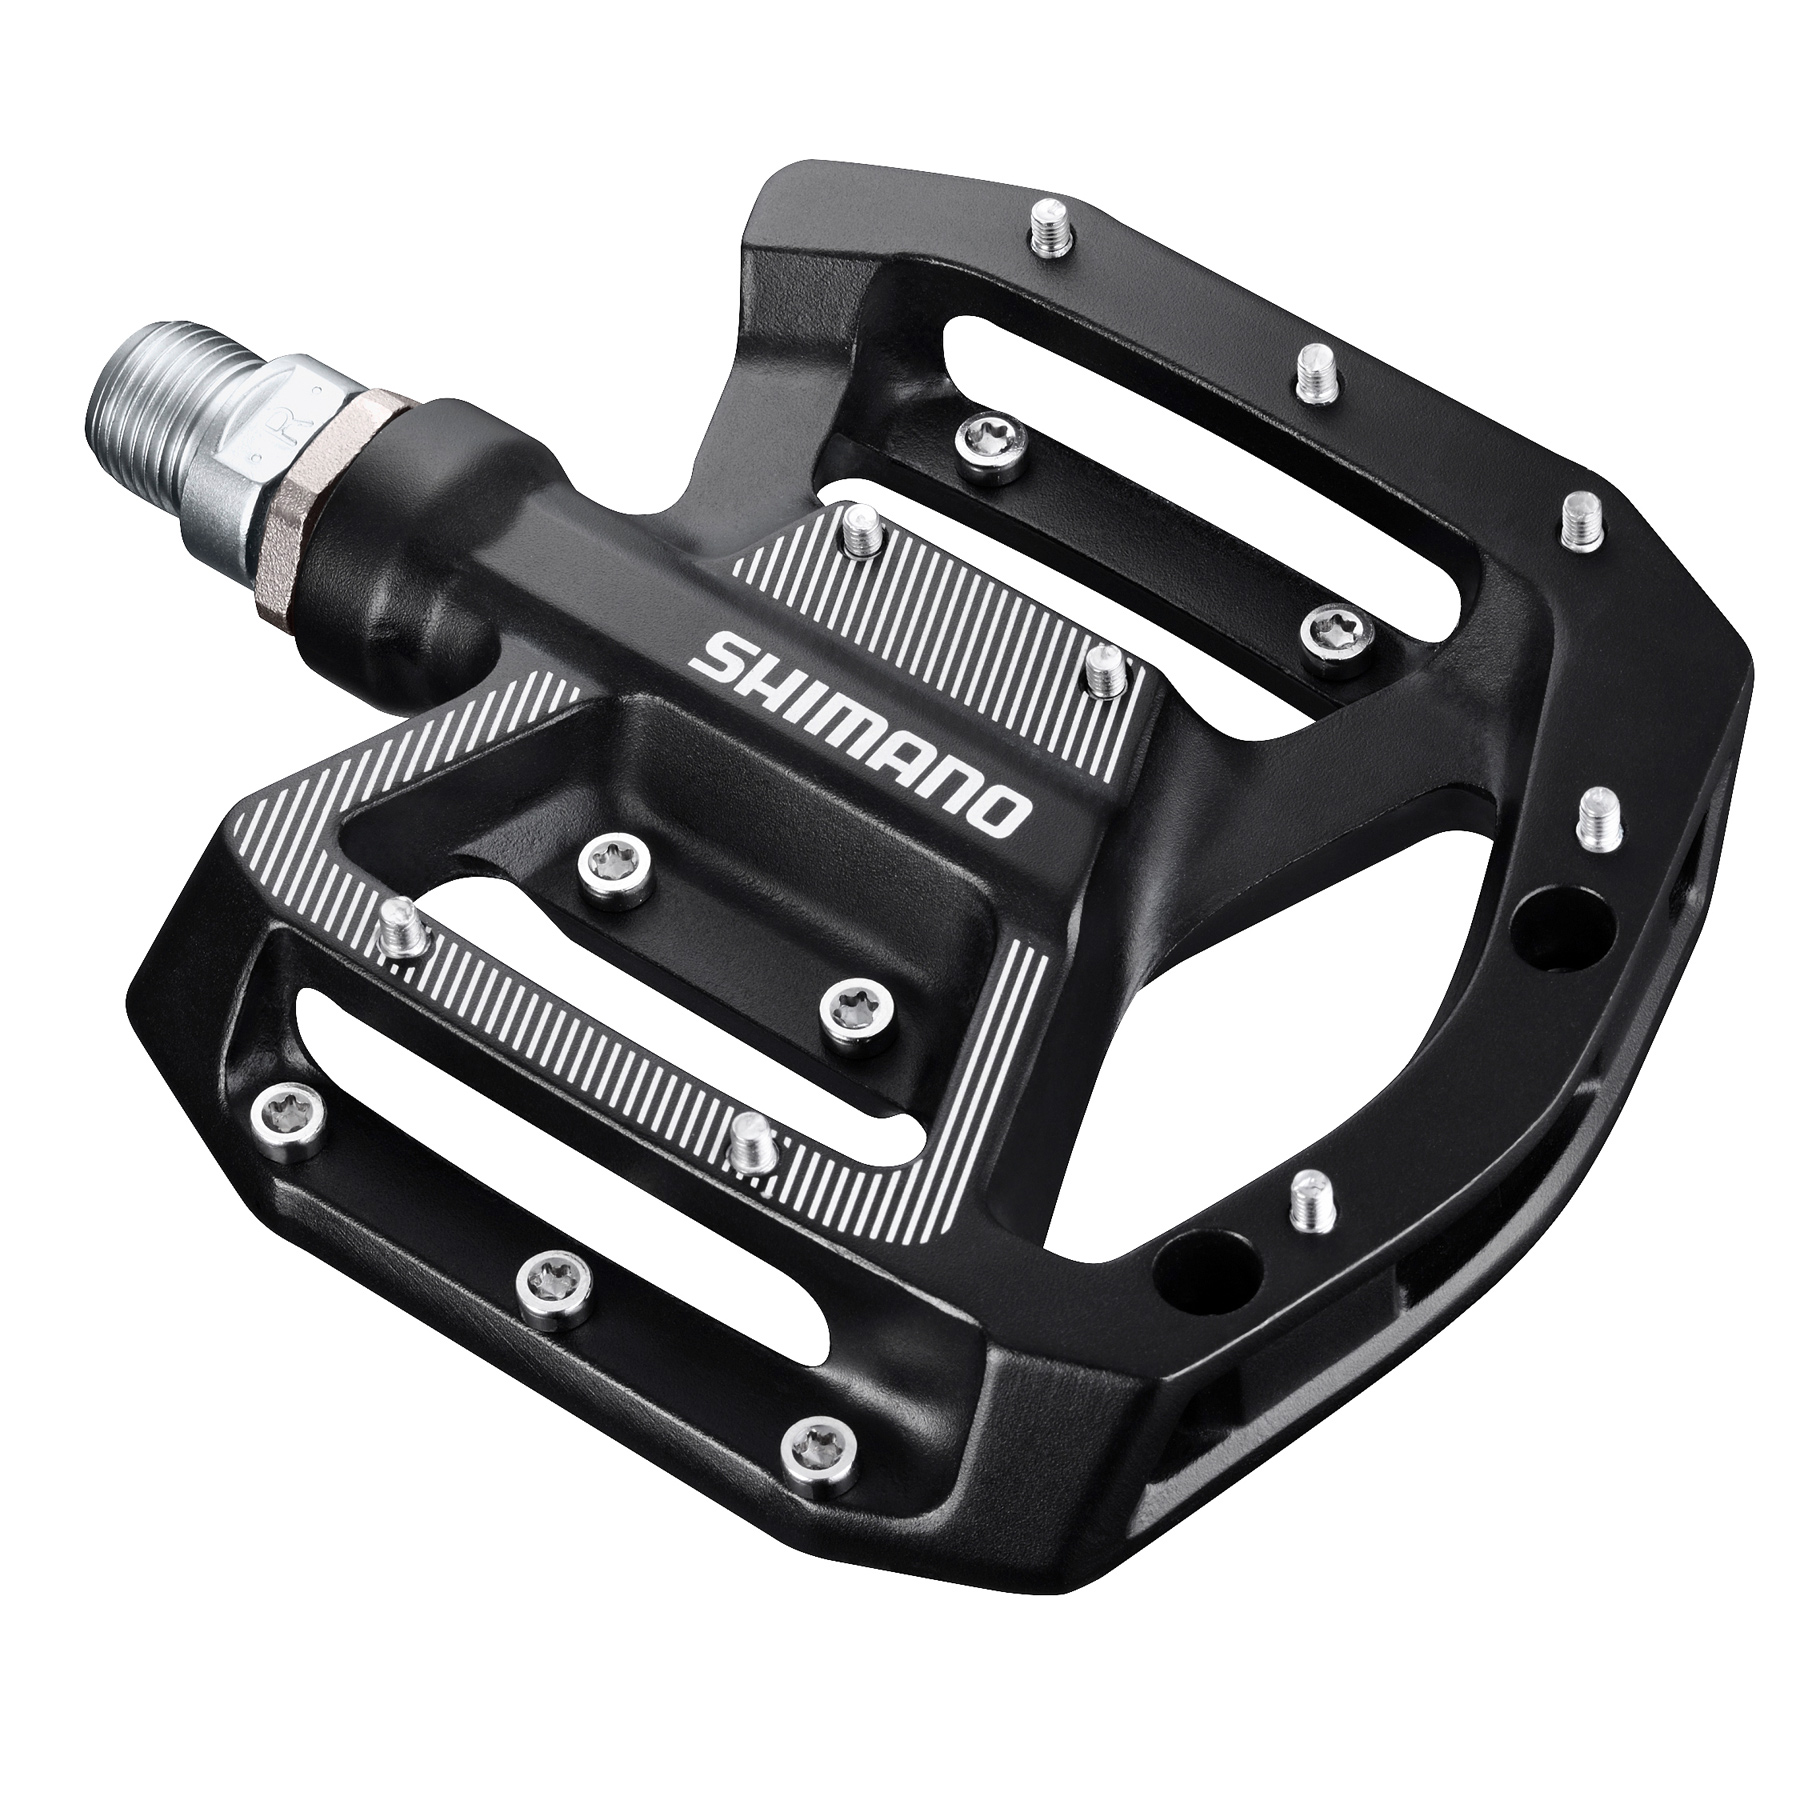 Produktbild von Shimano PD-GR500 Plattform-Pedal - schwarz